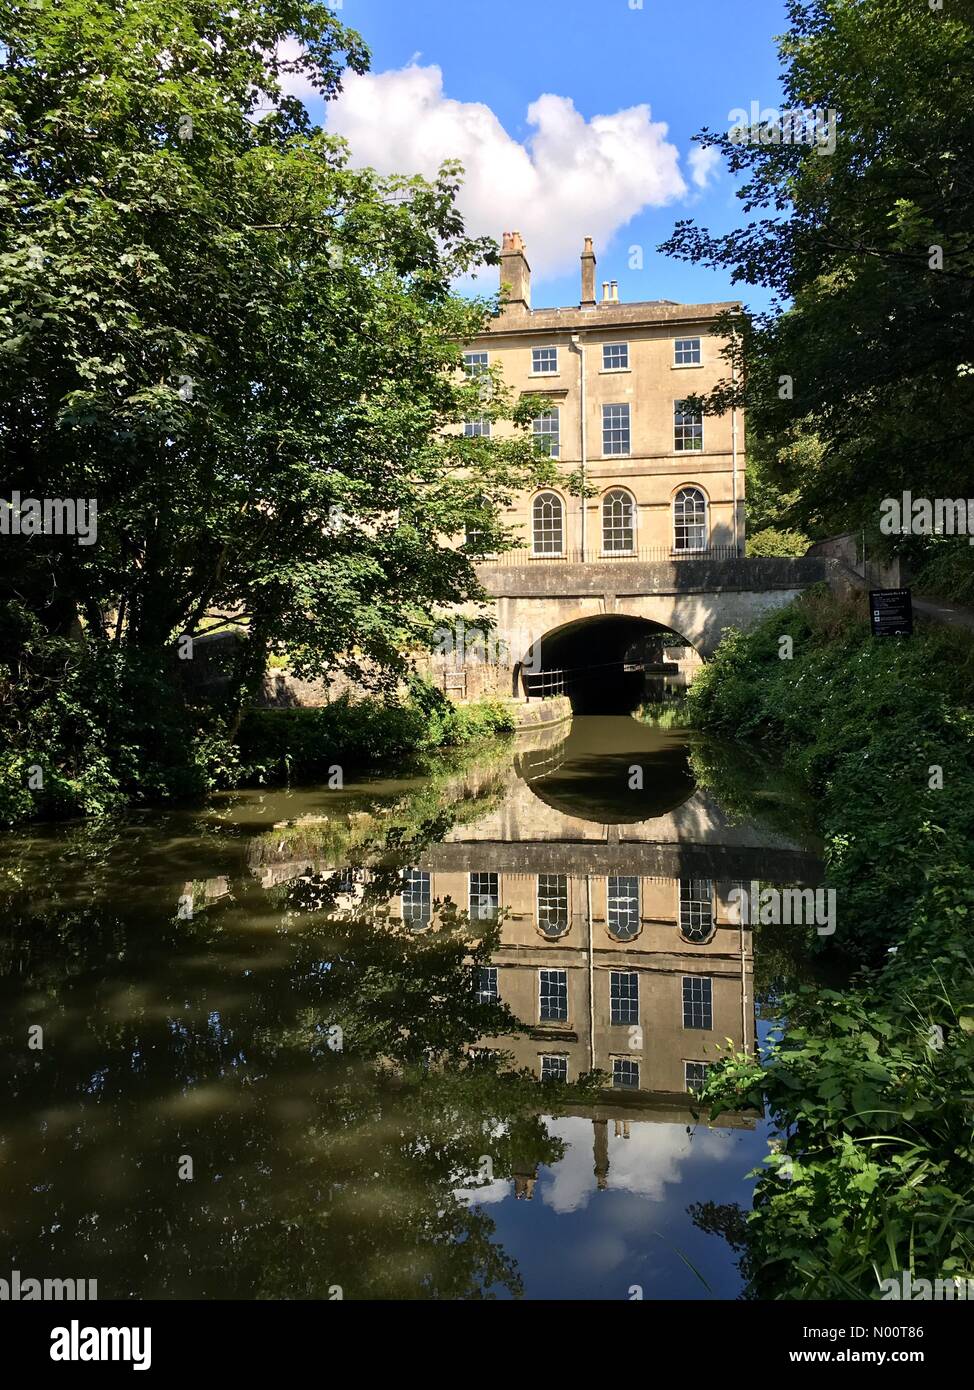 Bath, England, 11. Juli 2018 einen sonnigen und warmen 25 Grad heute am Cleveland House, entlang der Kennet und Avon Kanal an der Badewanne. Credit: Lisa Werner/StockimoNews/Alamy leben Nachrichten Stockfoto